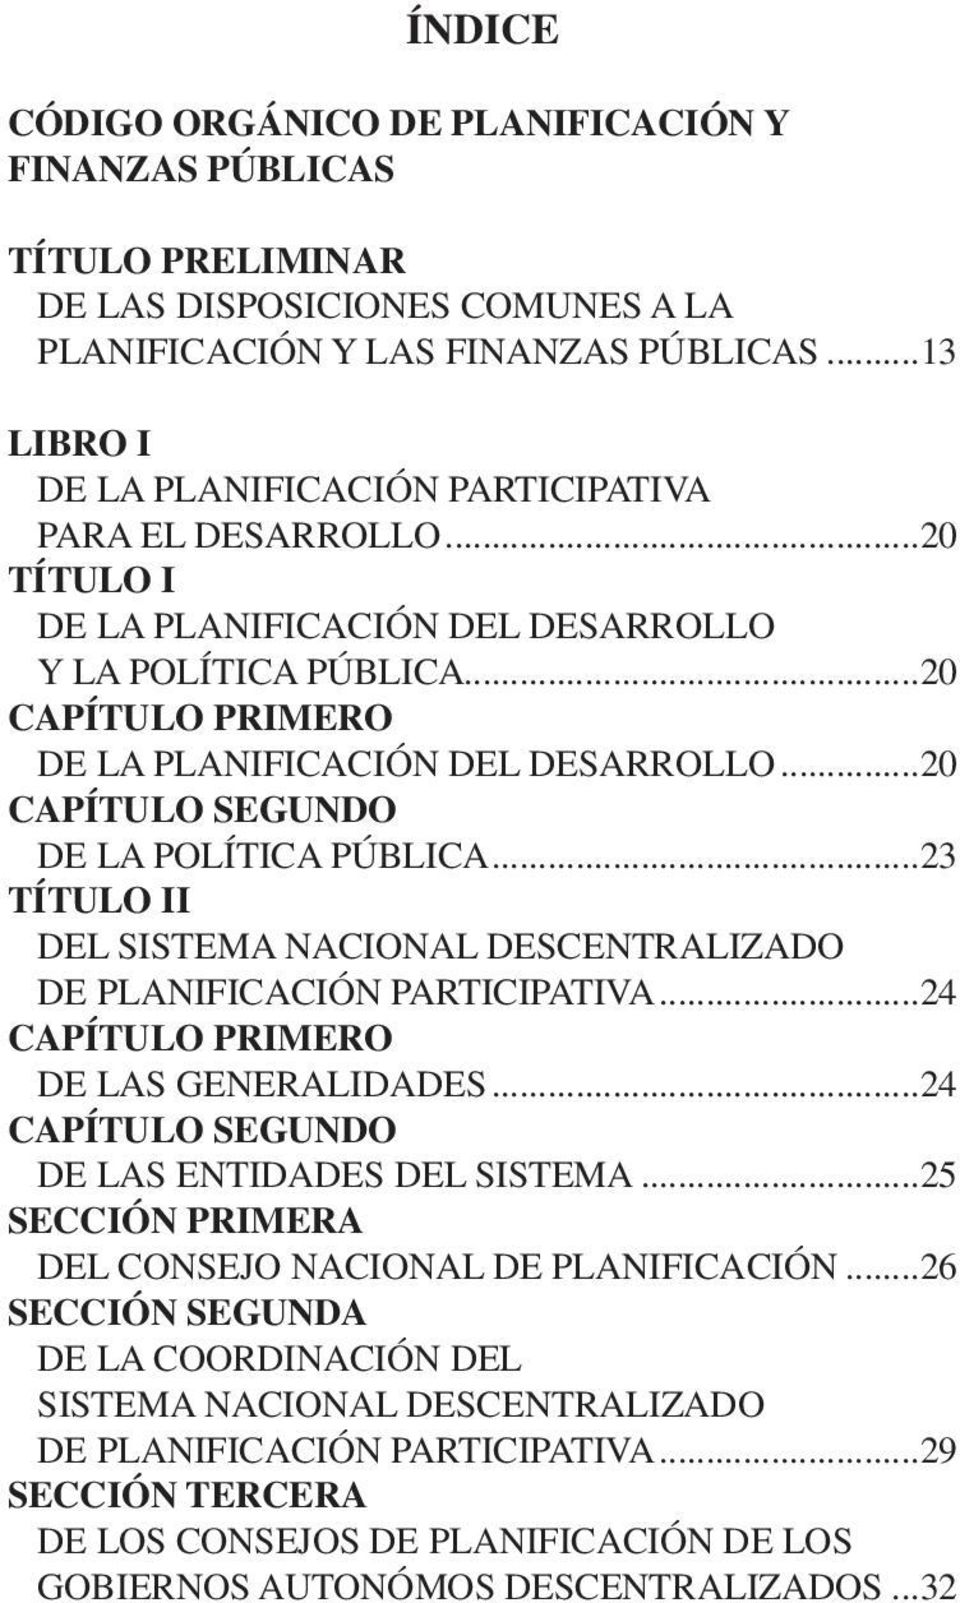 ..20 CAPÍTULO SEGUNDO DE LA POLÍTICA PÚBLICA...23 TÍTULO II DEL SISTEMA NACIONAL DESCENTRALIZADO DE PLANIFICACIÓN PARTICIPATIVA...24 CAPÍTULO PRIMERO DE LAS GENERALIDADES.